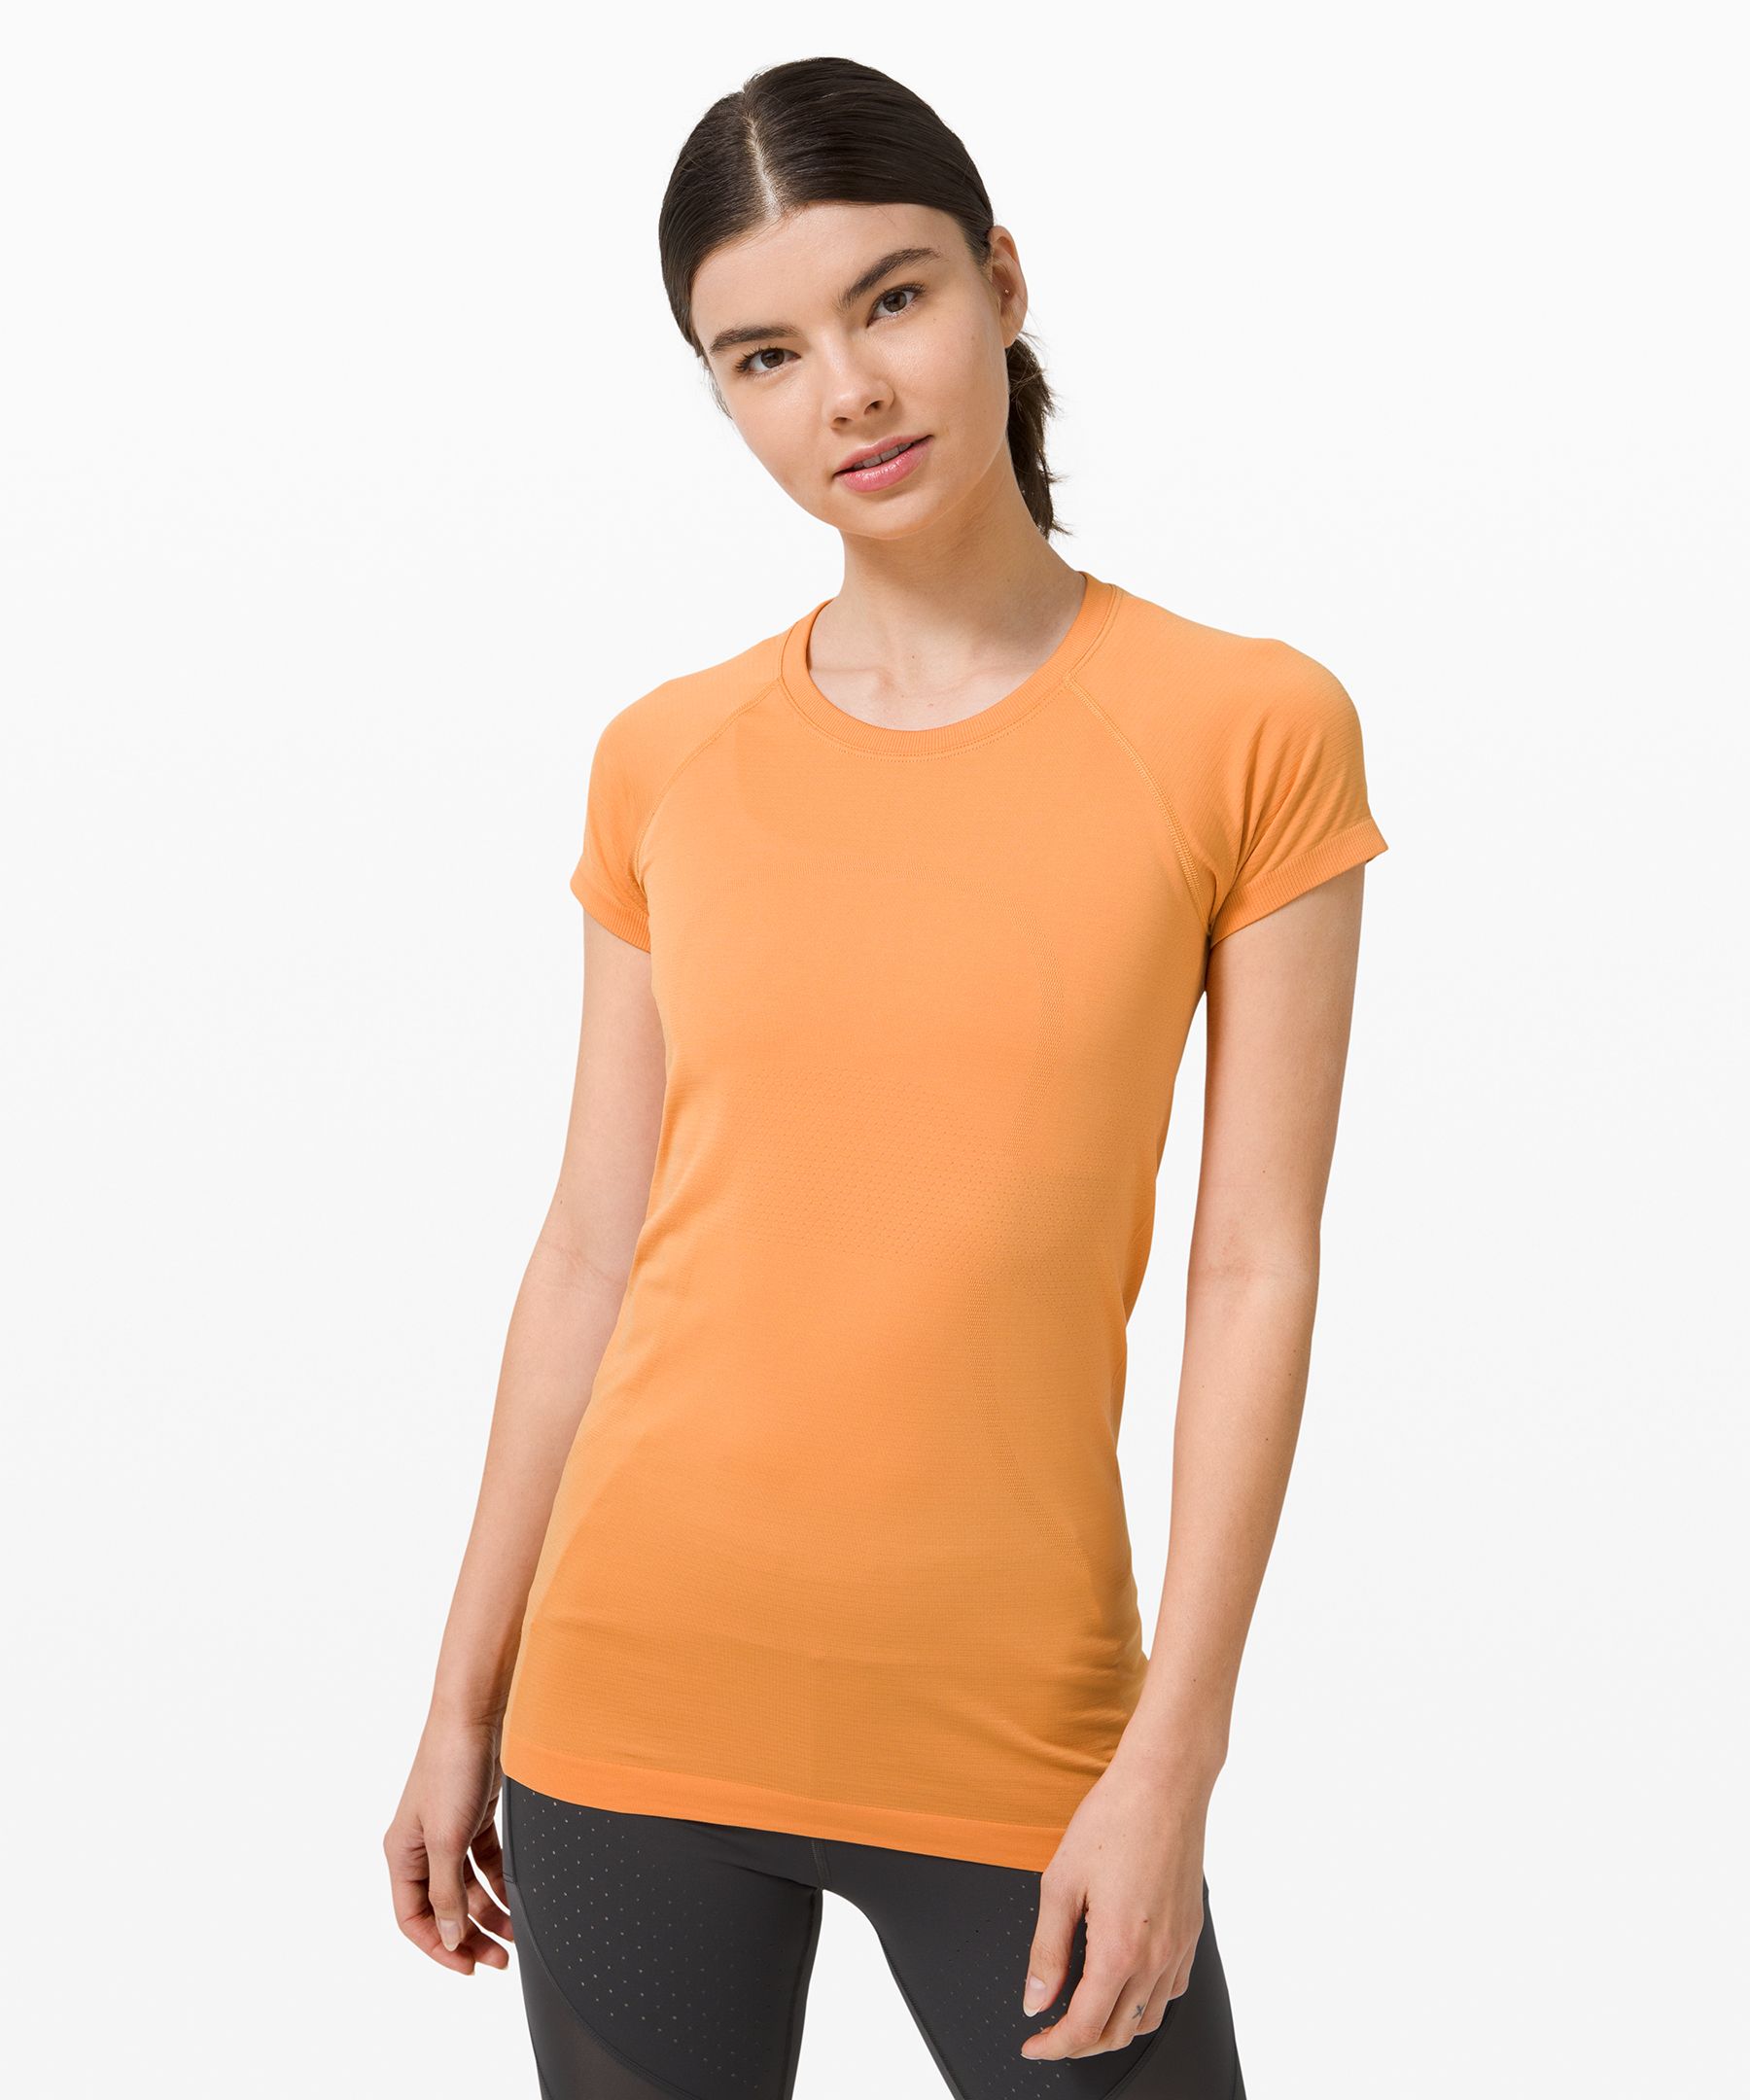 Lululemon Old Style Swiftly Tech Orange Size 6 - $29 (57% Off